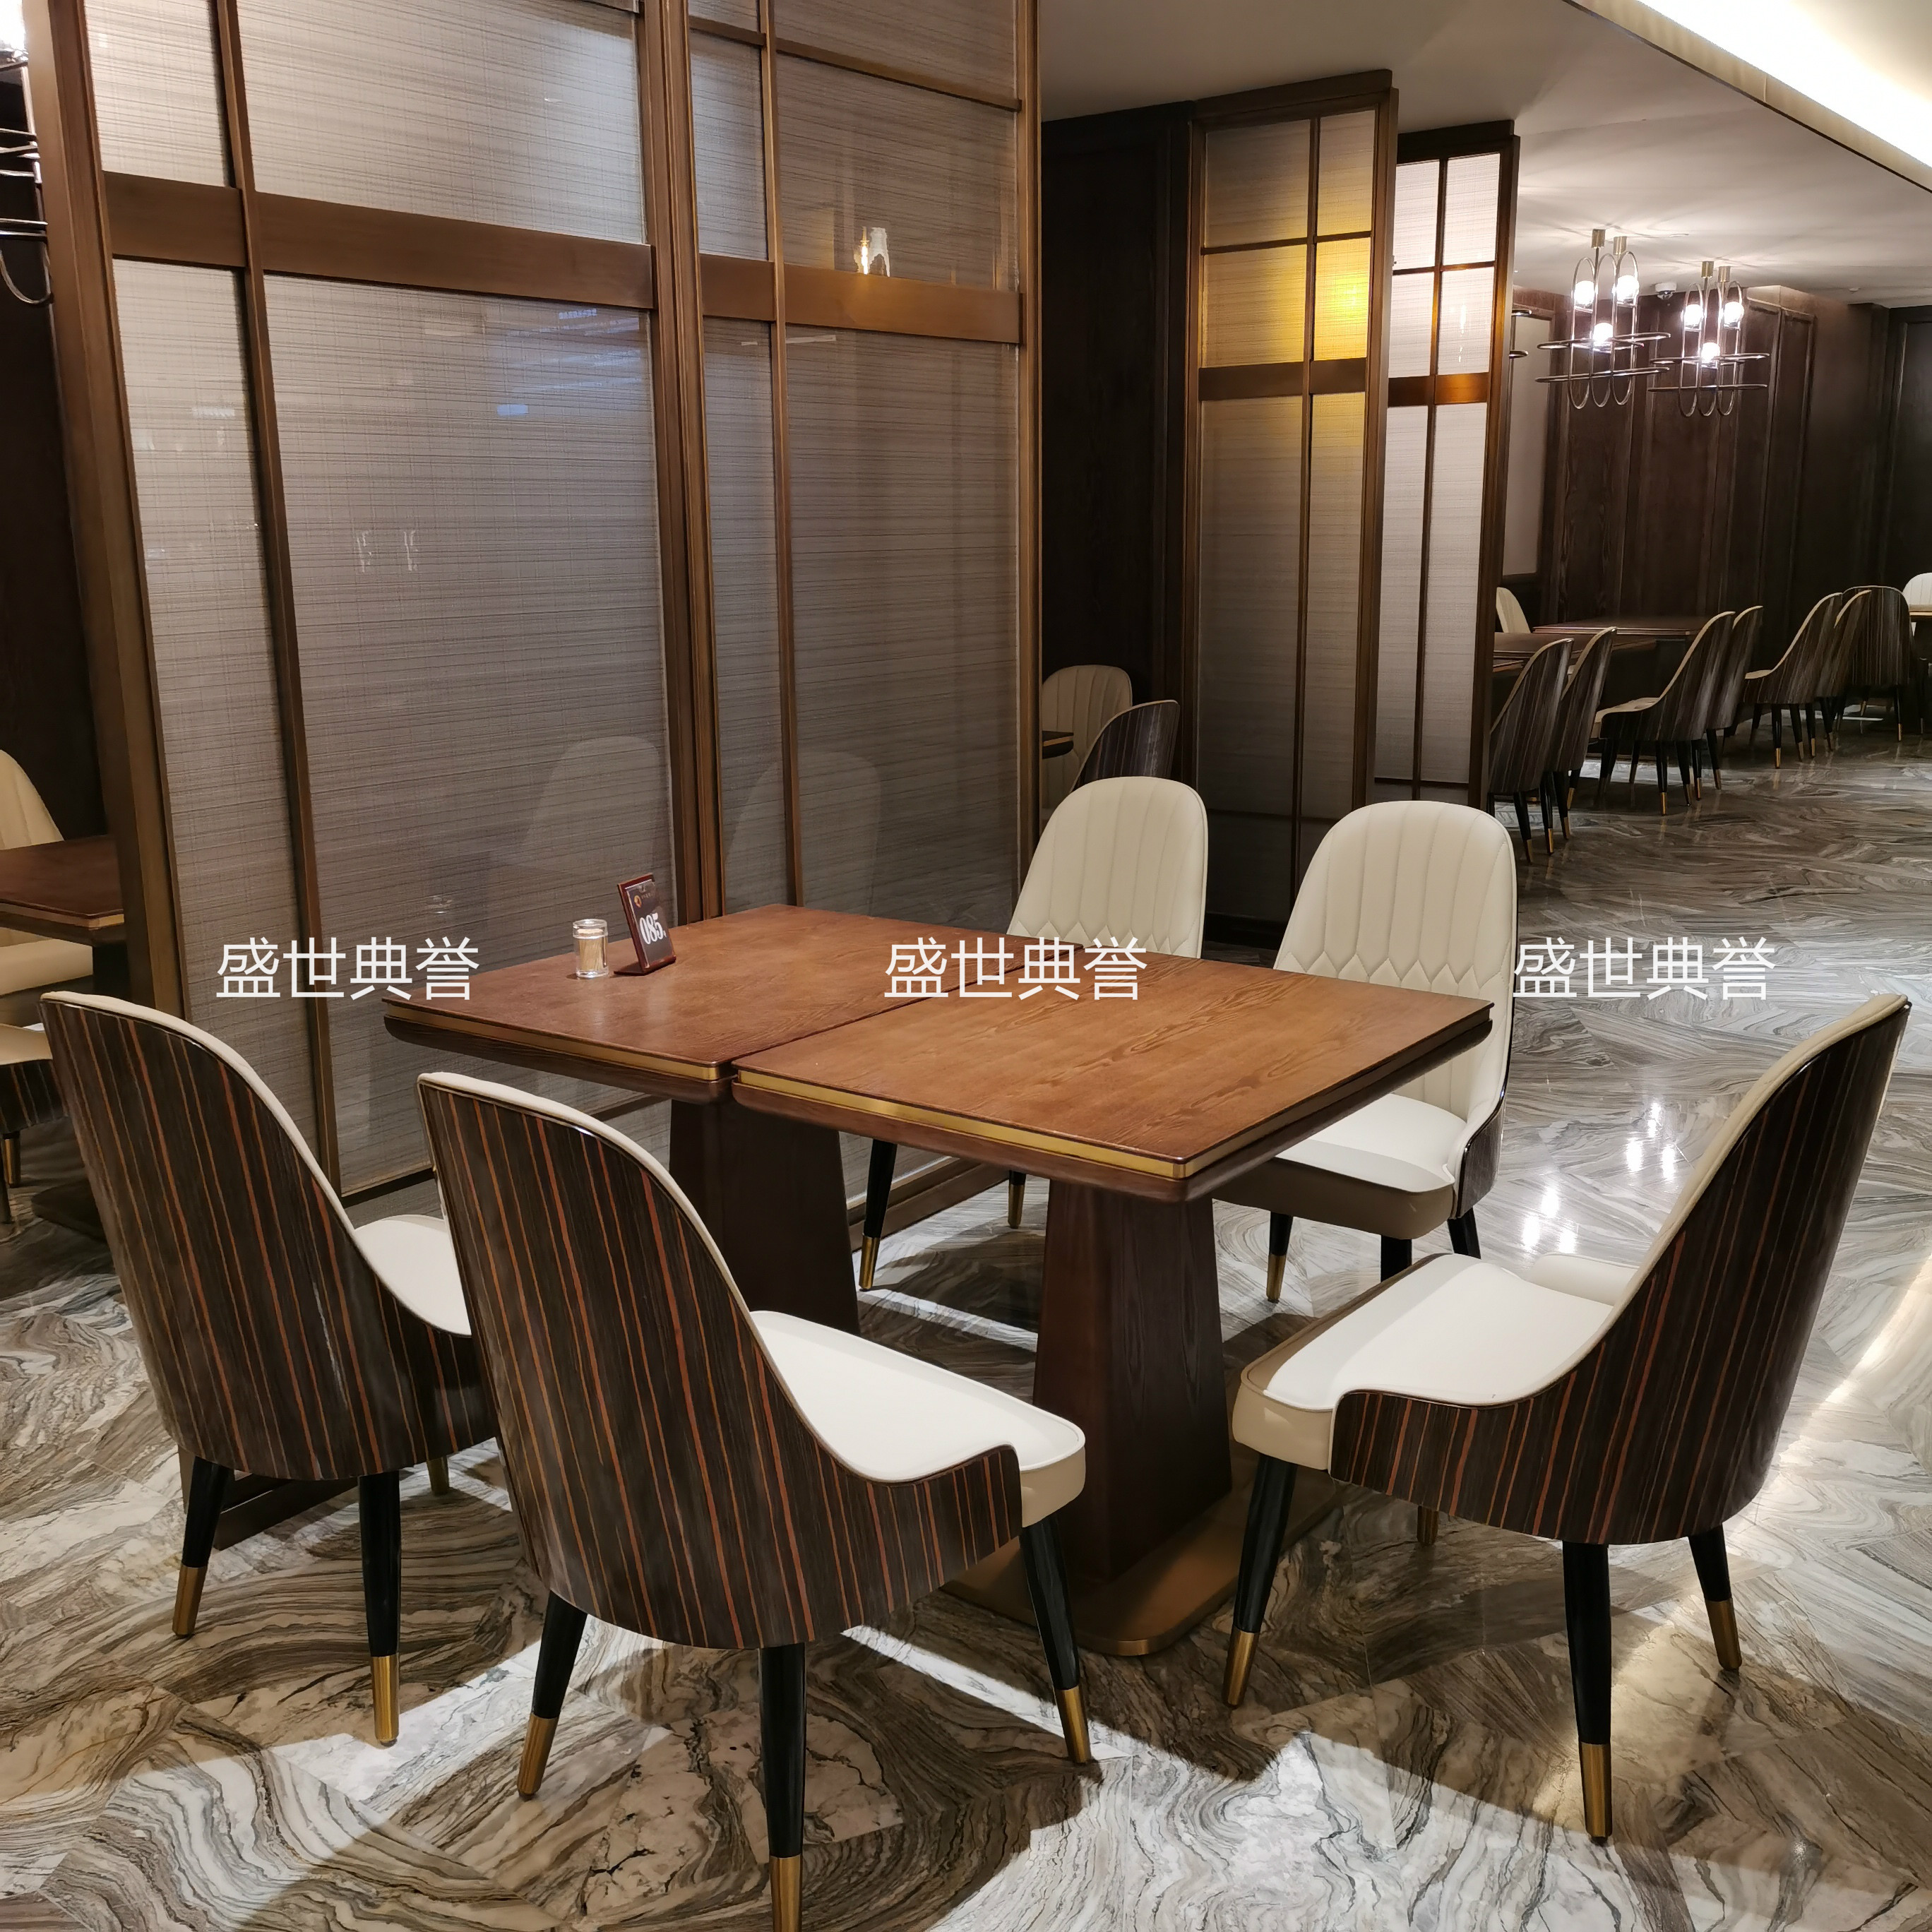 上海度假酒店西餐桌椅海鲜餐厅轻奢实木椅饭店自助餐厅实木餐桌椅详情图4